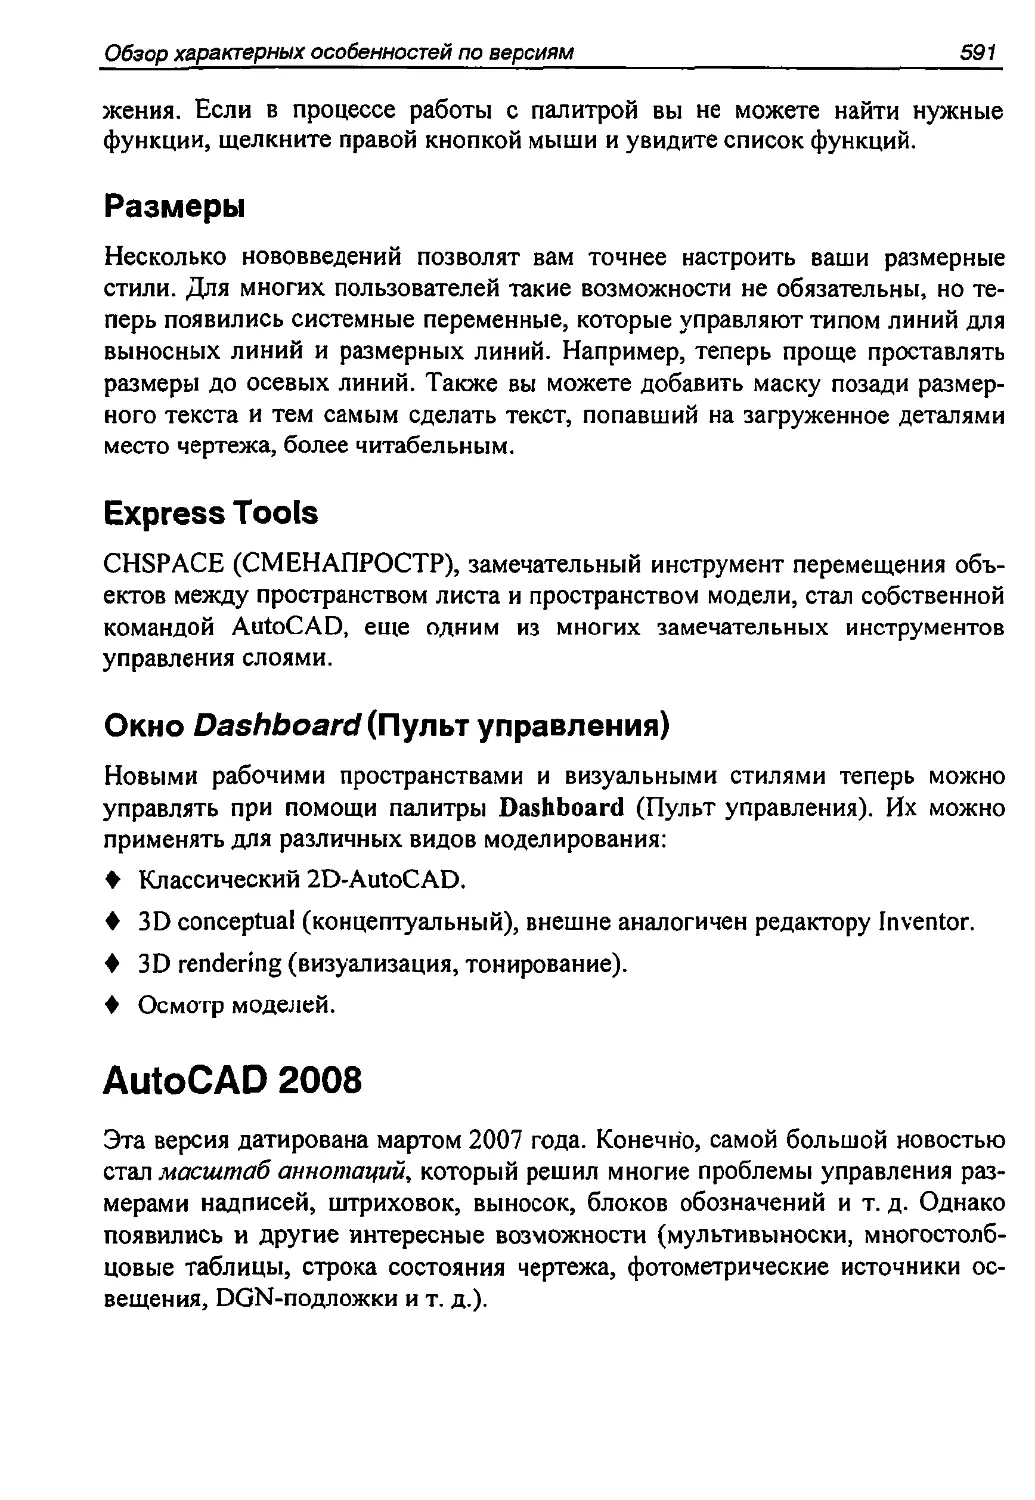 Размеры
Express Tools
AutoCAD 2008